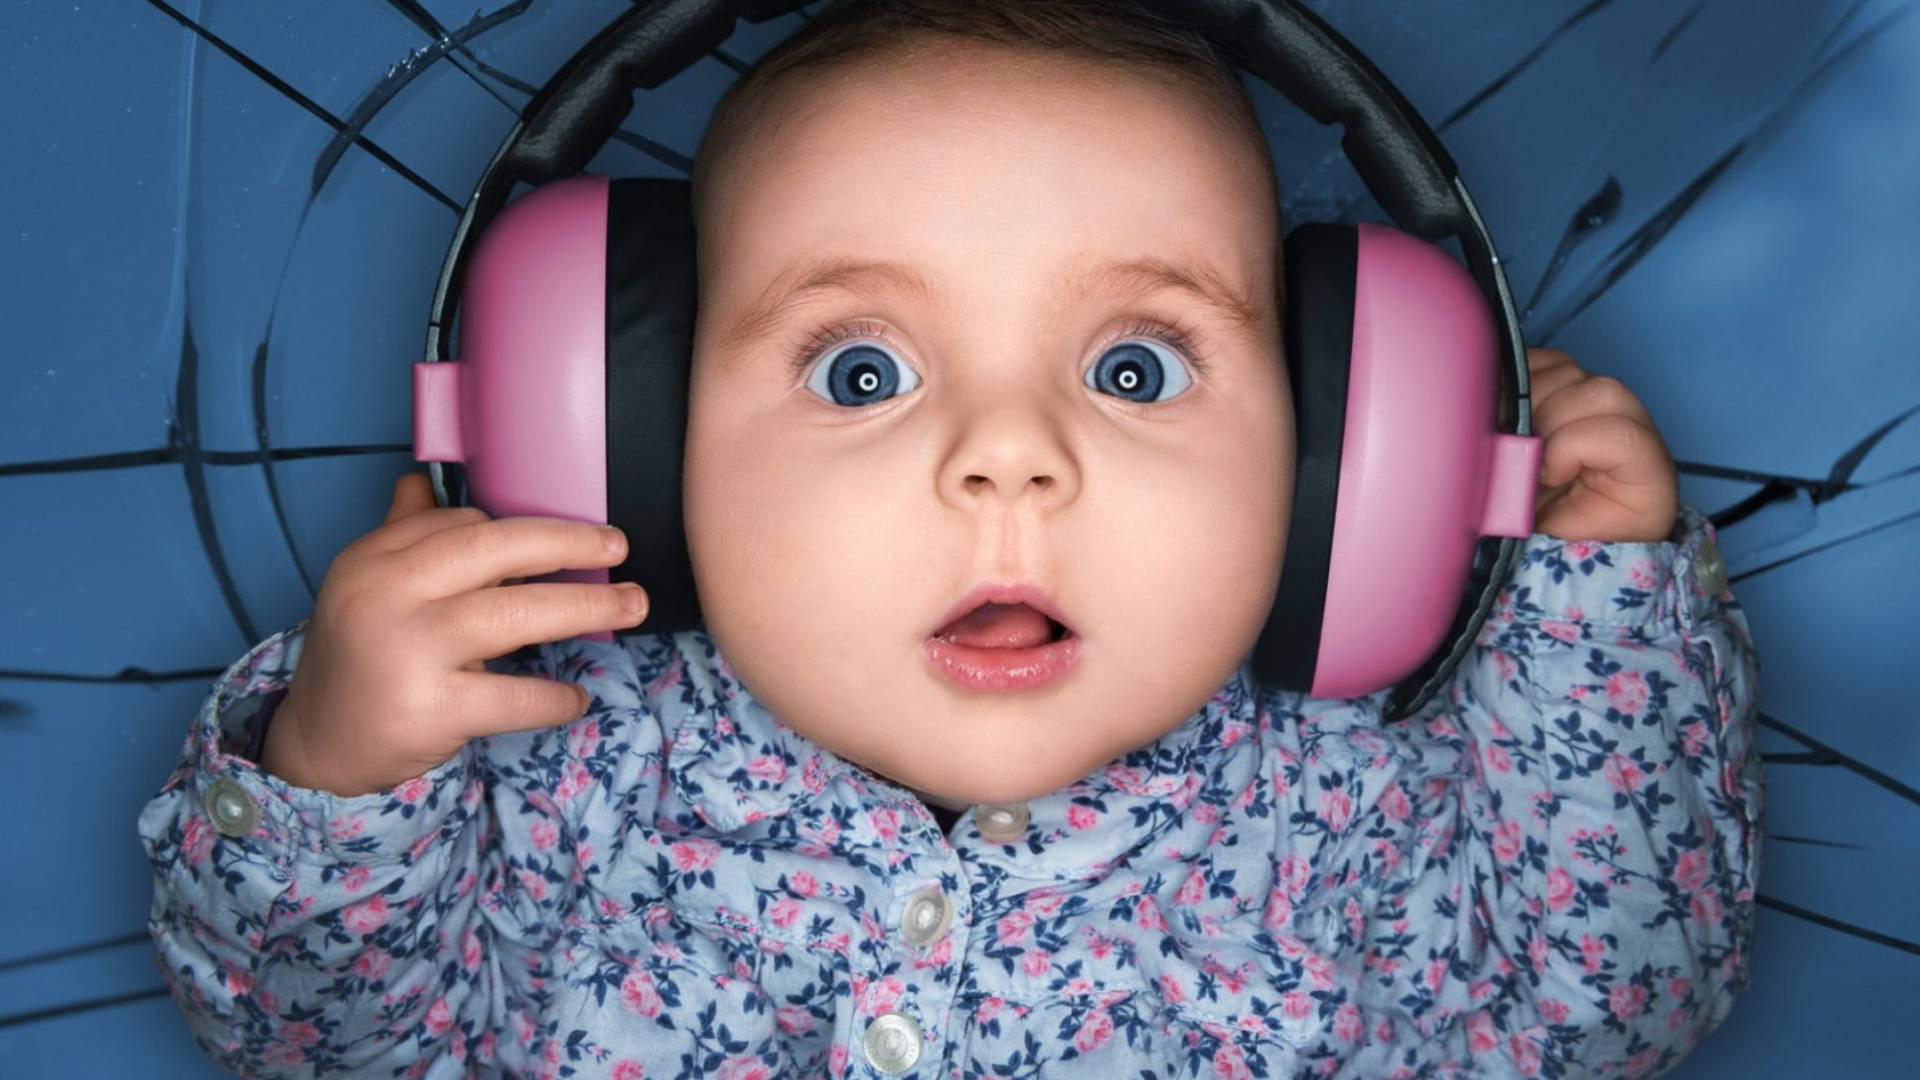 Baby Love Wearing Headphones Wallpaper